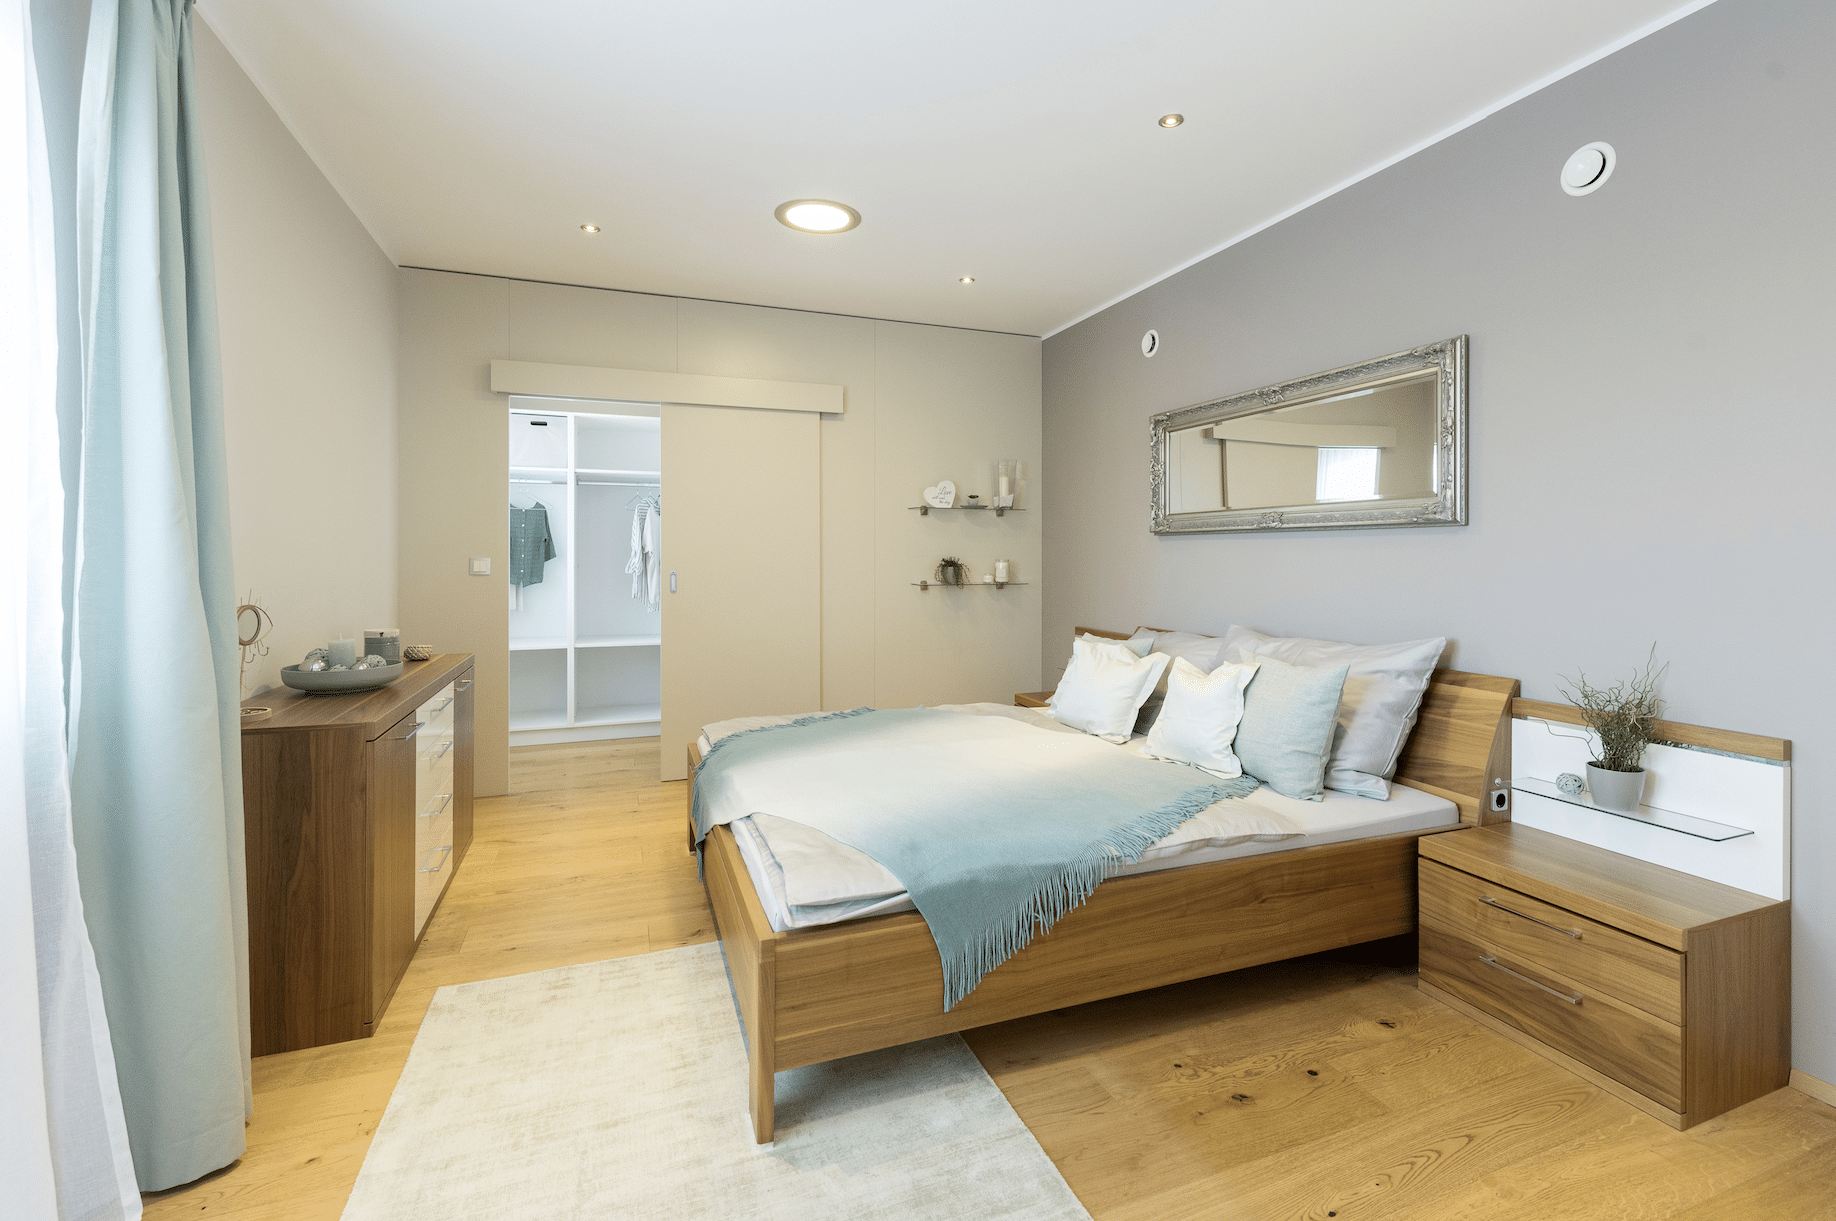 HARTL HAUS zeigt ein schönes Schlafzimmer mit begehbarem Kleiderschrank.